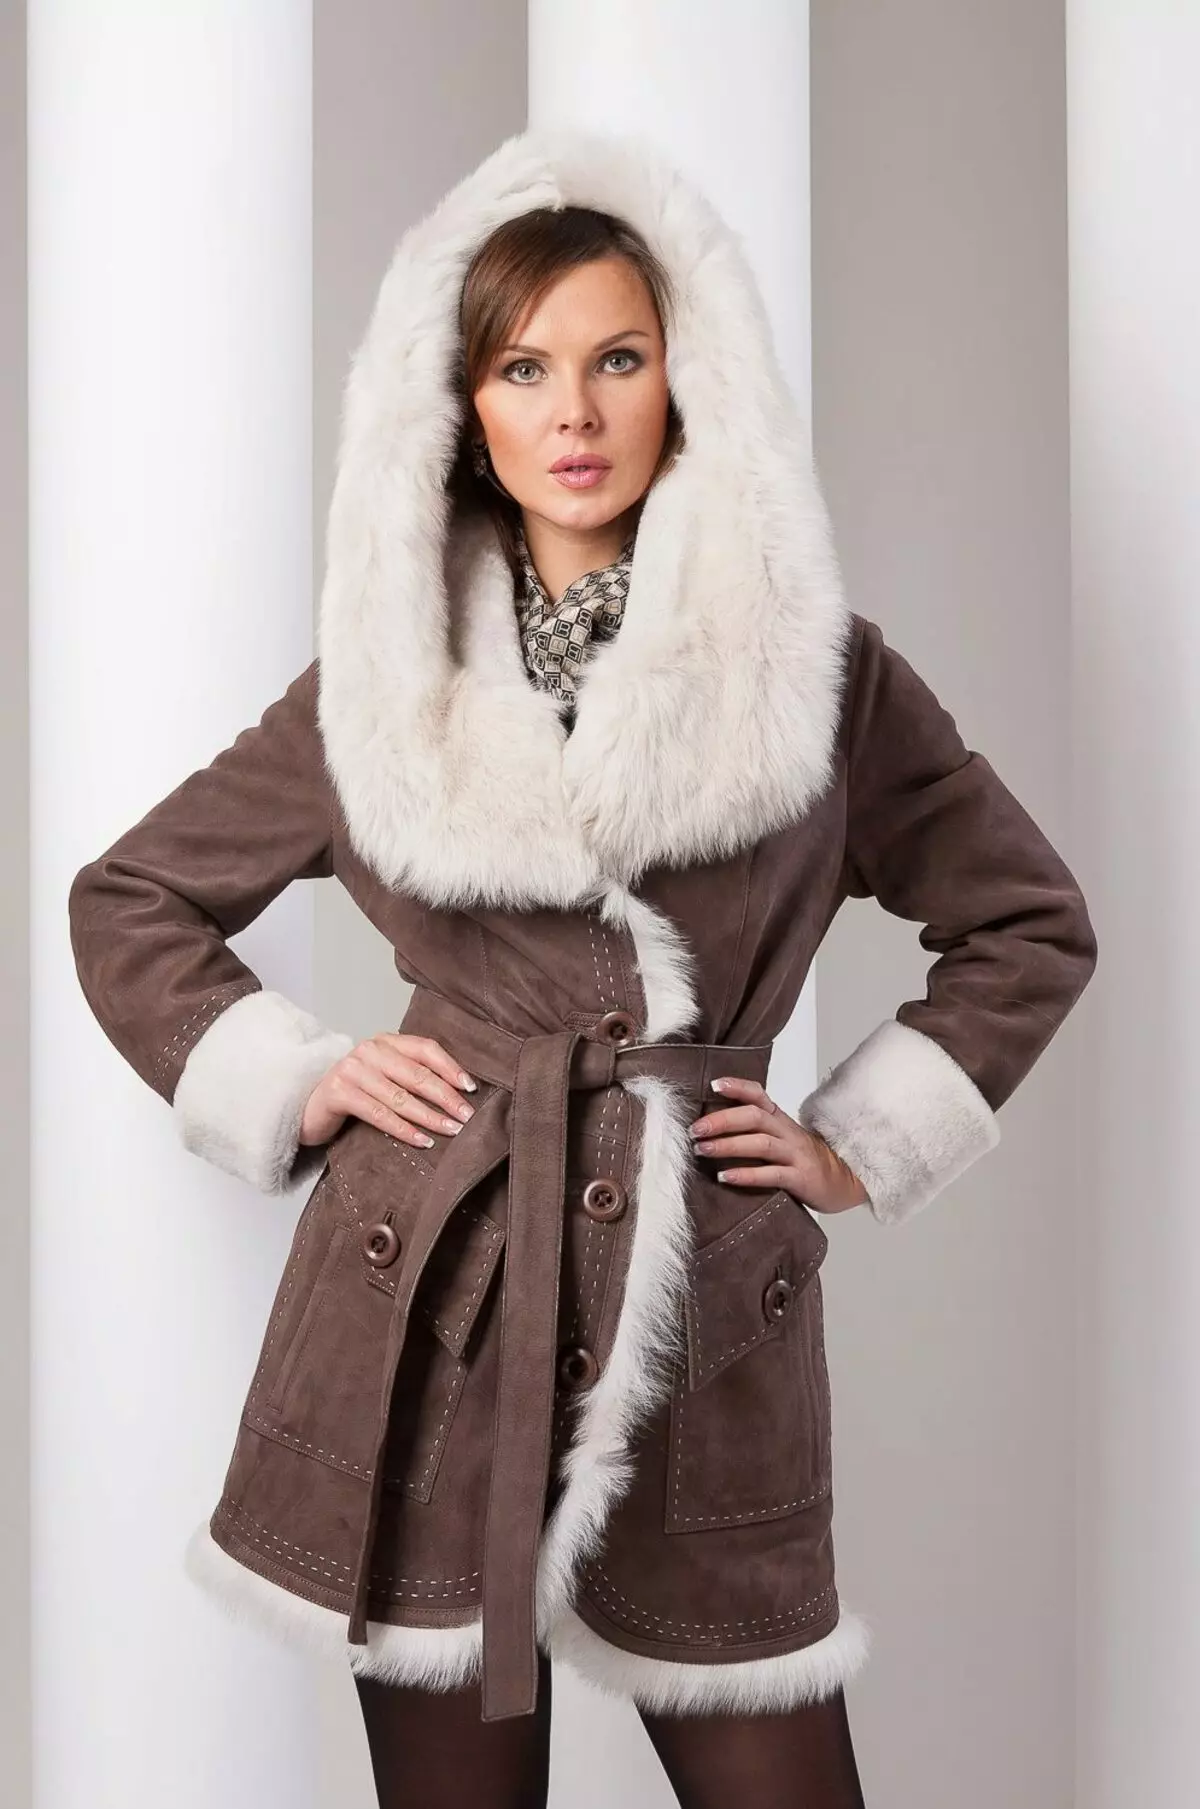 فر کوٹ یا بھیڑ (137 فوٹو): کیا بہتر ہے اور موسم سرما کے لئے گرمی کی کوٹ، کوٹ، جیکٹس یا نیچے جیکٹیں بھیڑوں سے مختلف ہوتی ہیں 738_89